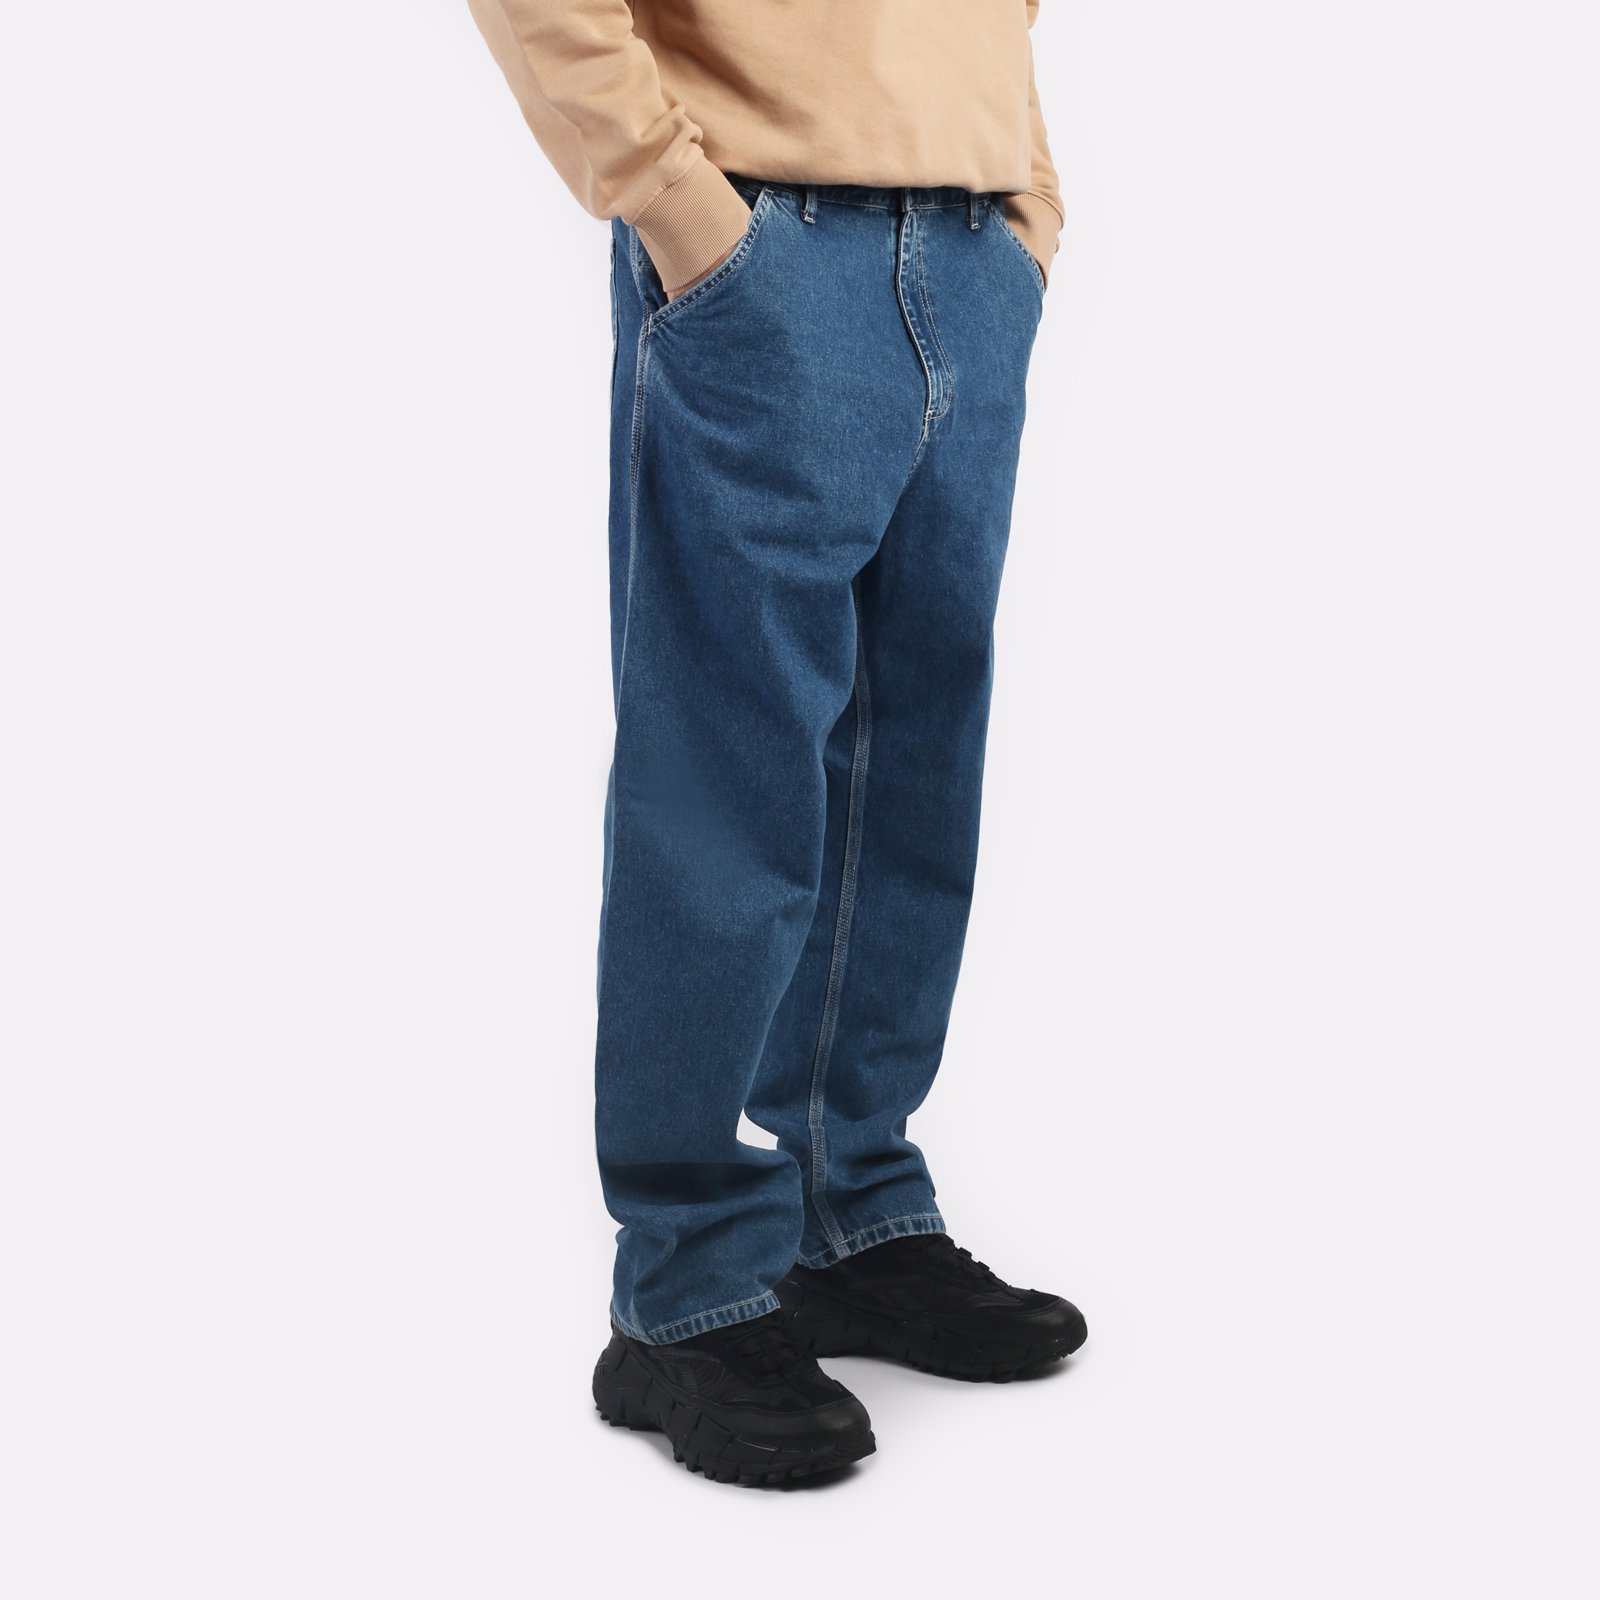 мужские джинсы Carhartt WIP Simple Pant  (I022947-blue)  - цена, описание, фото 3